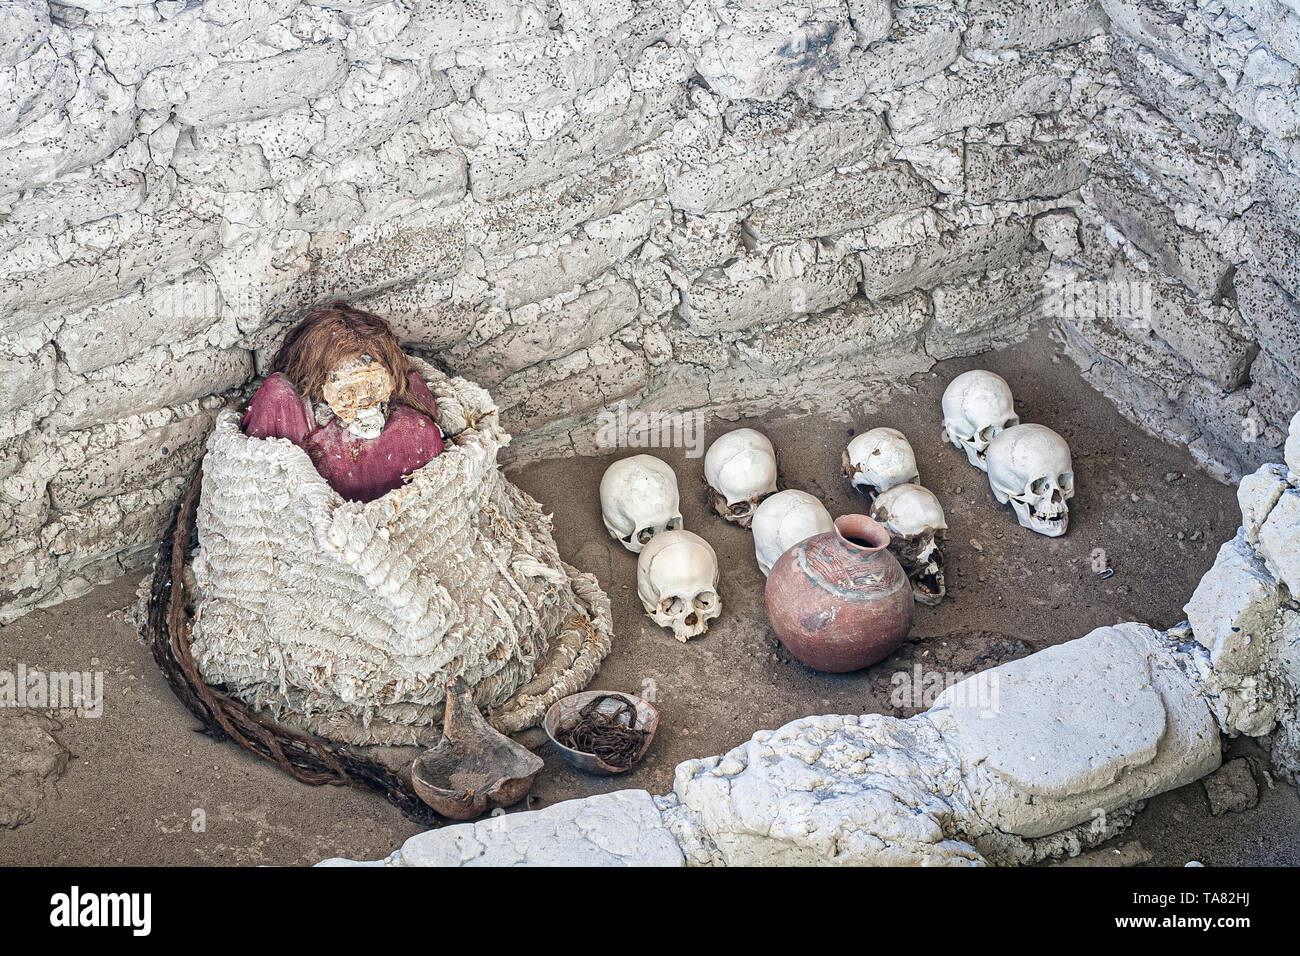 Mummie al cimitero di Chauchilla (Cementerio de Chauchilla), scoperto nel 1920s. Nasca, reparto di Ica, Perù. Foto Stock